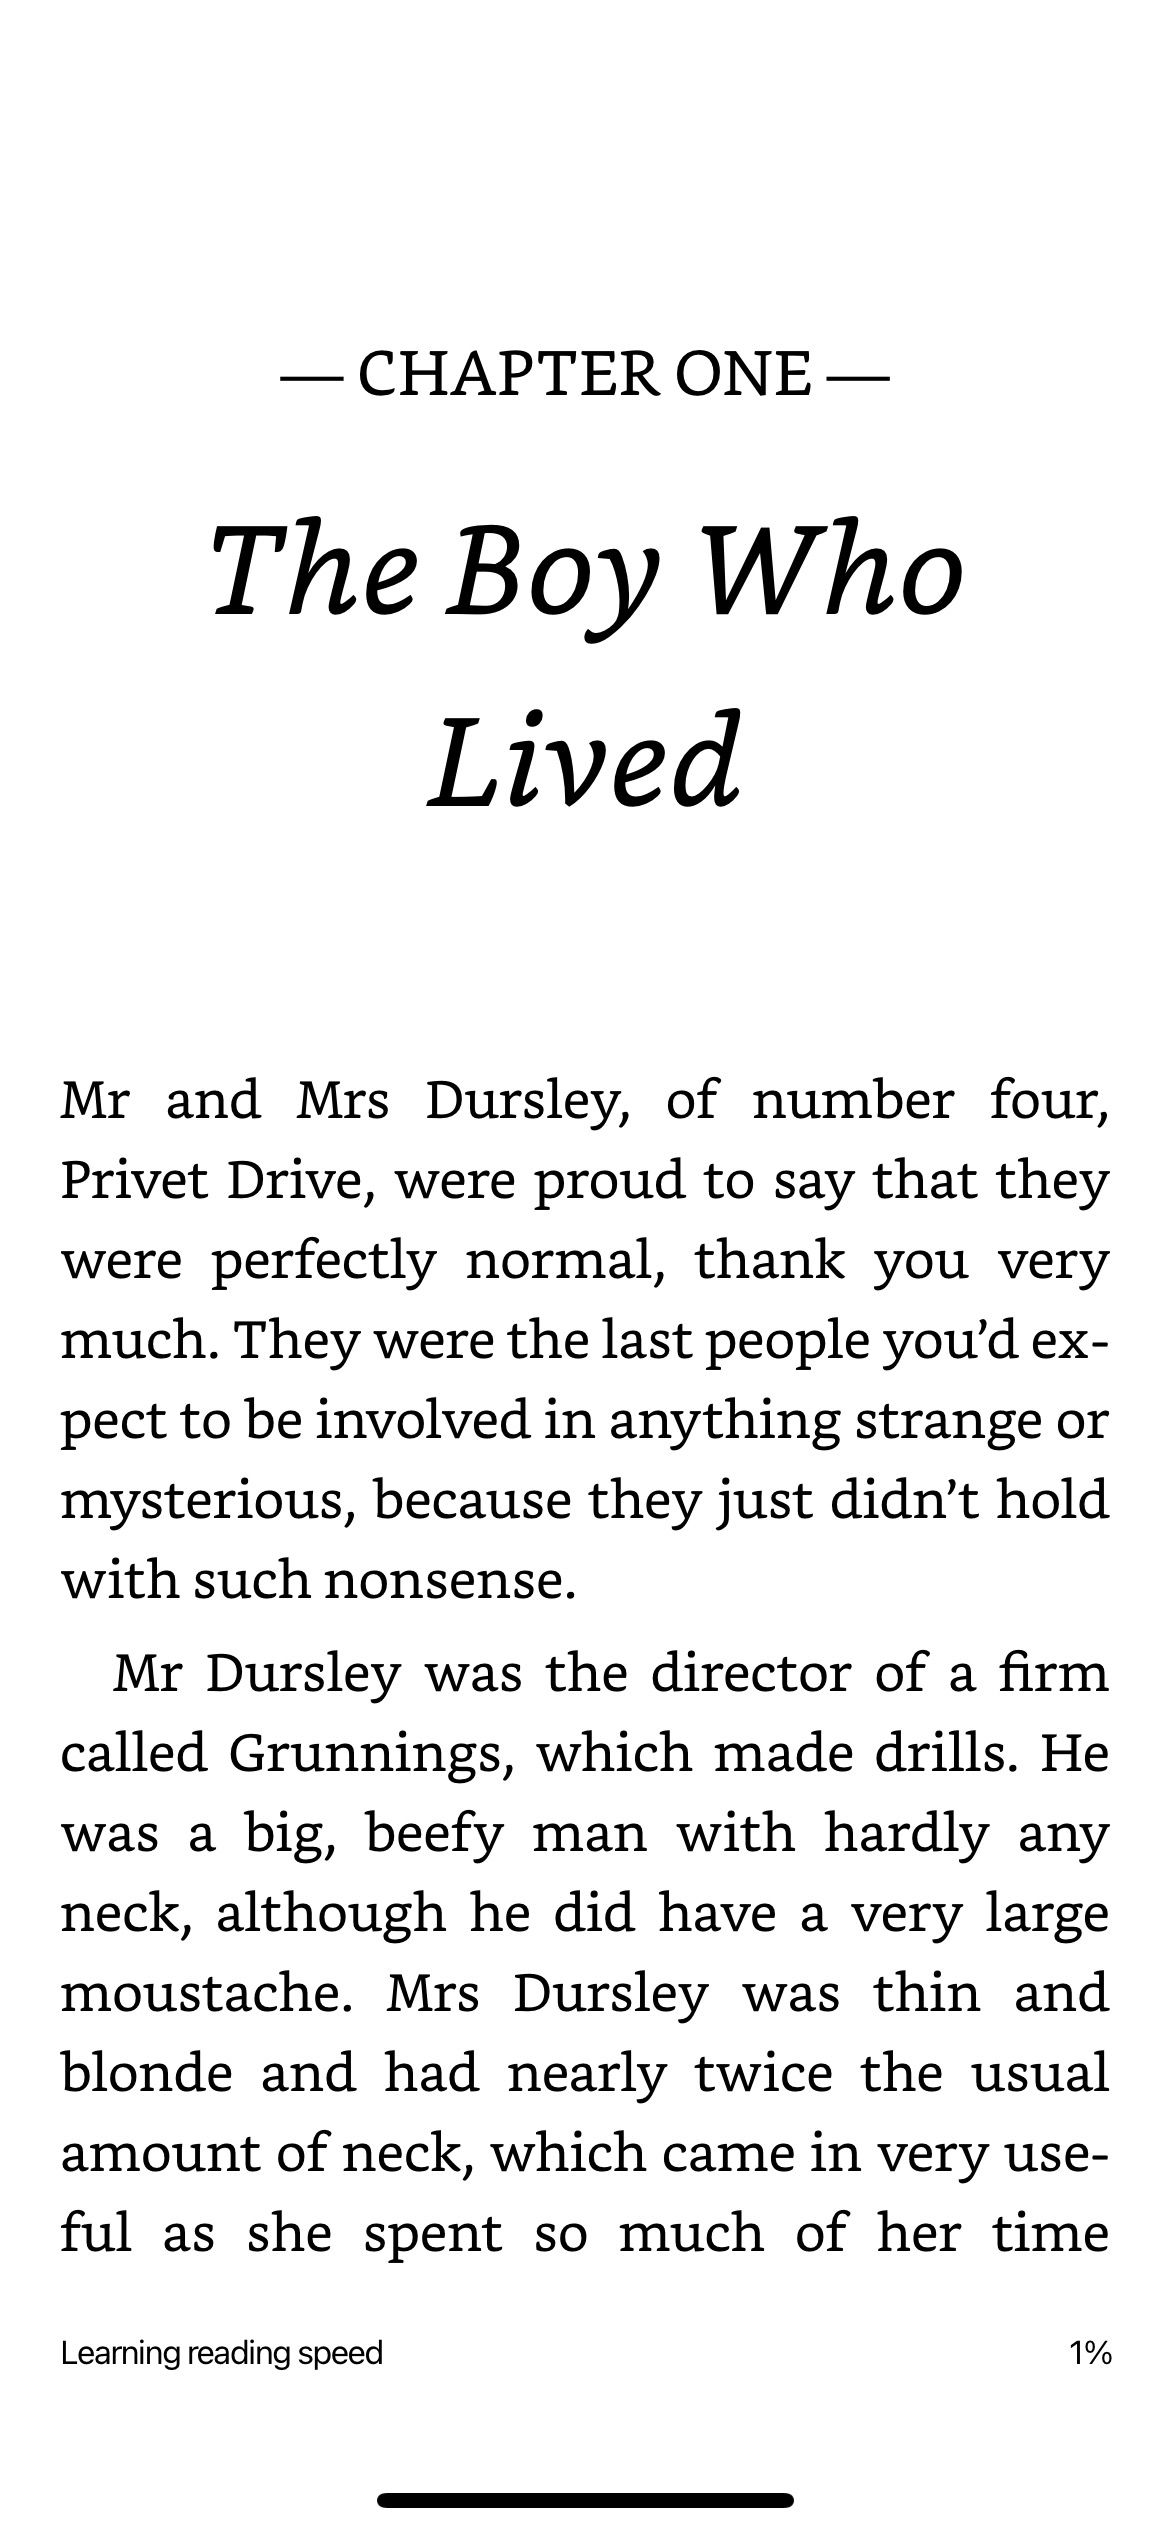 فصل اول کتاب هری پاتر در مورد اپلیکیشن کیندل